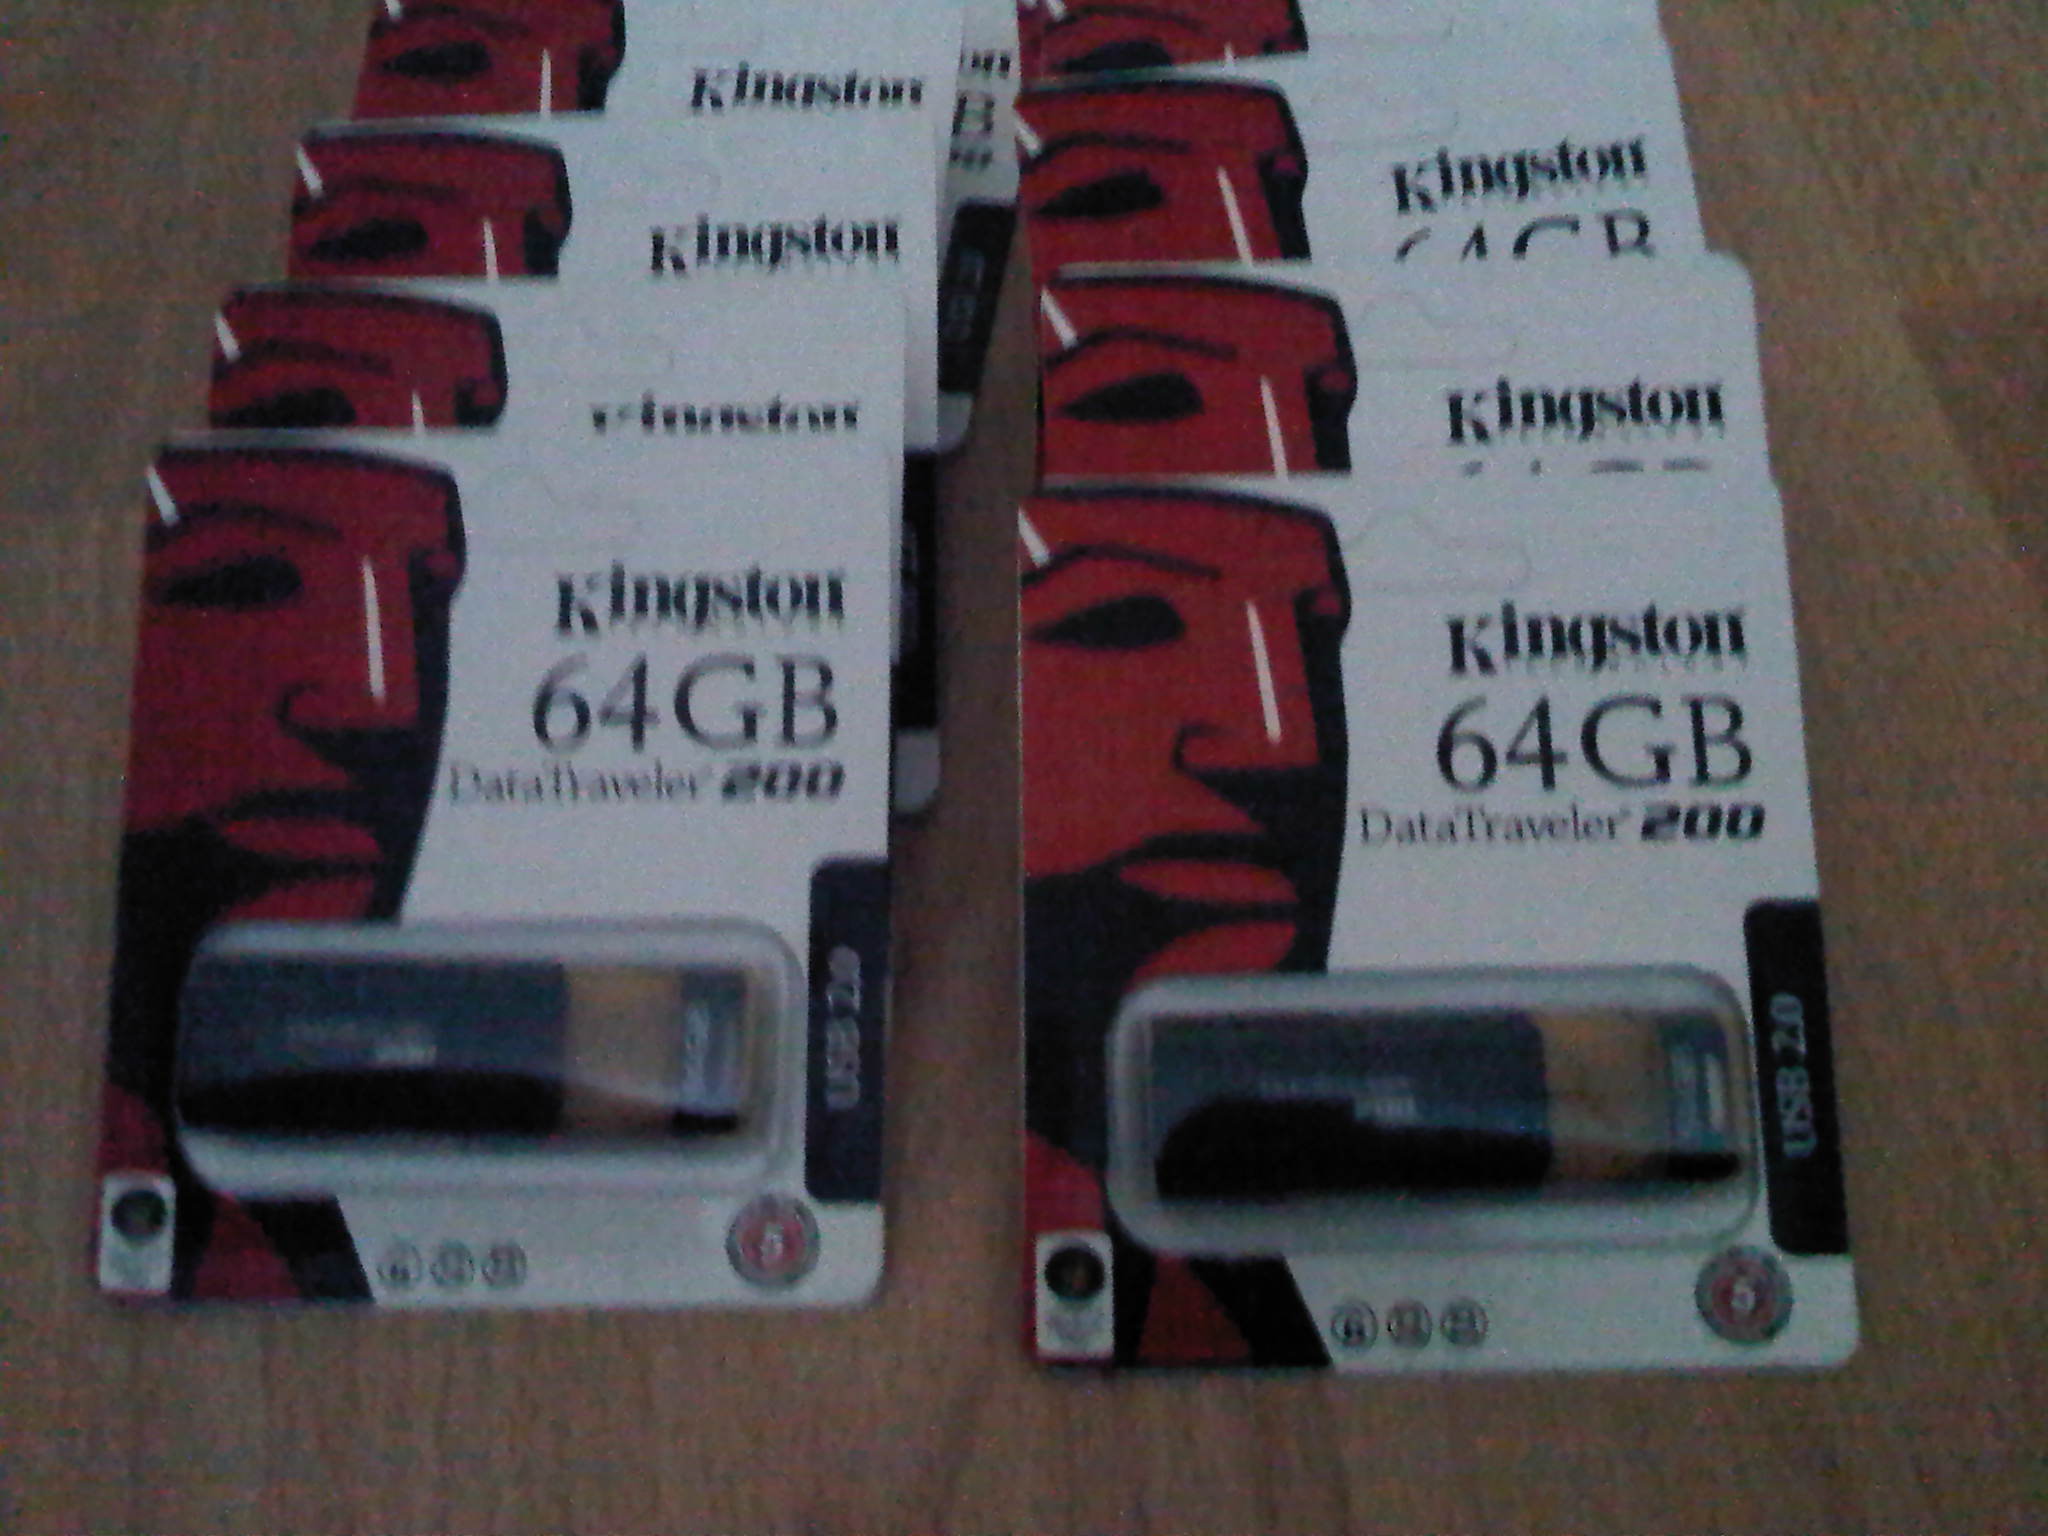 Kingston Datatraveler 200 (10 stuks)-img-20120209-00028-jpg